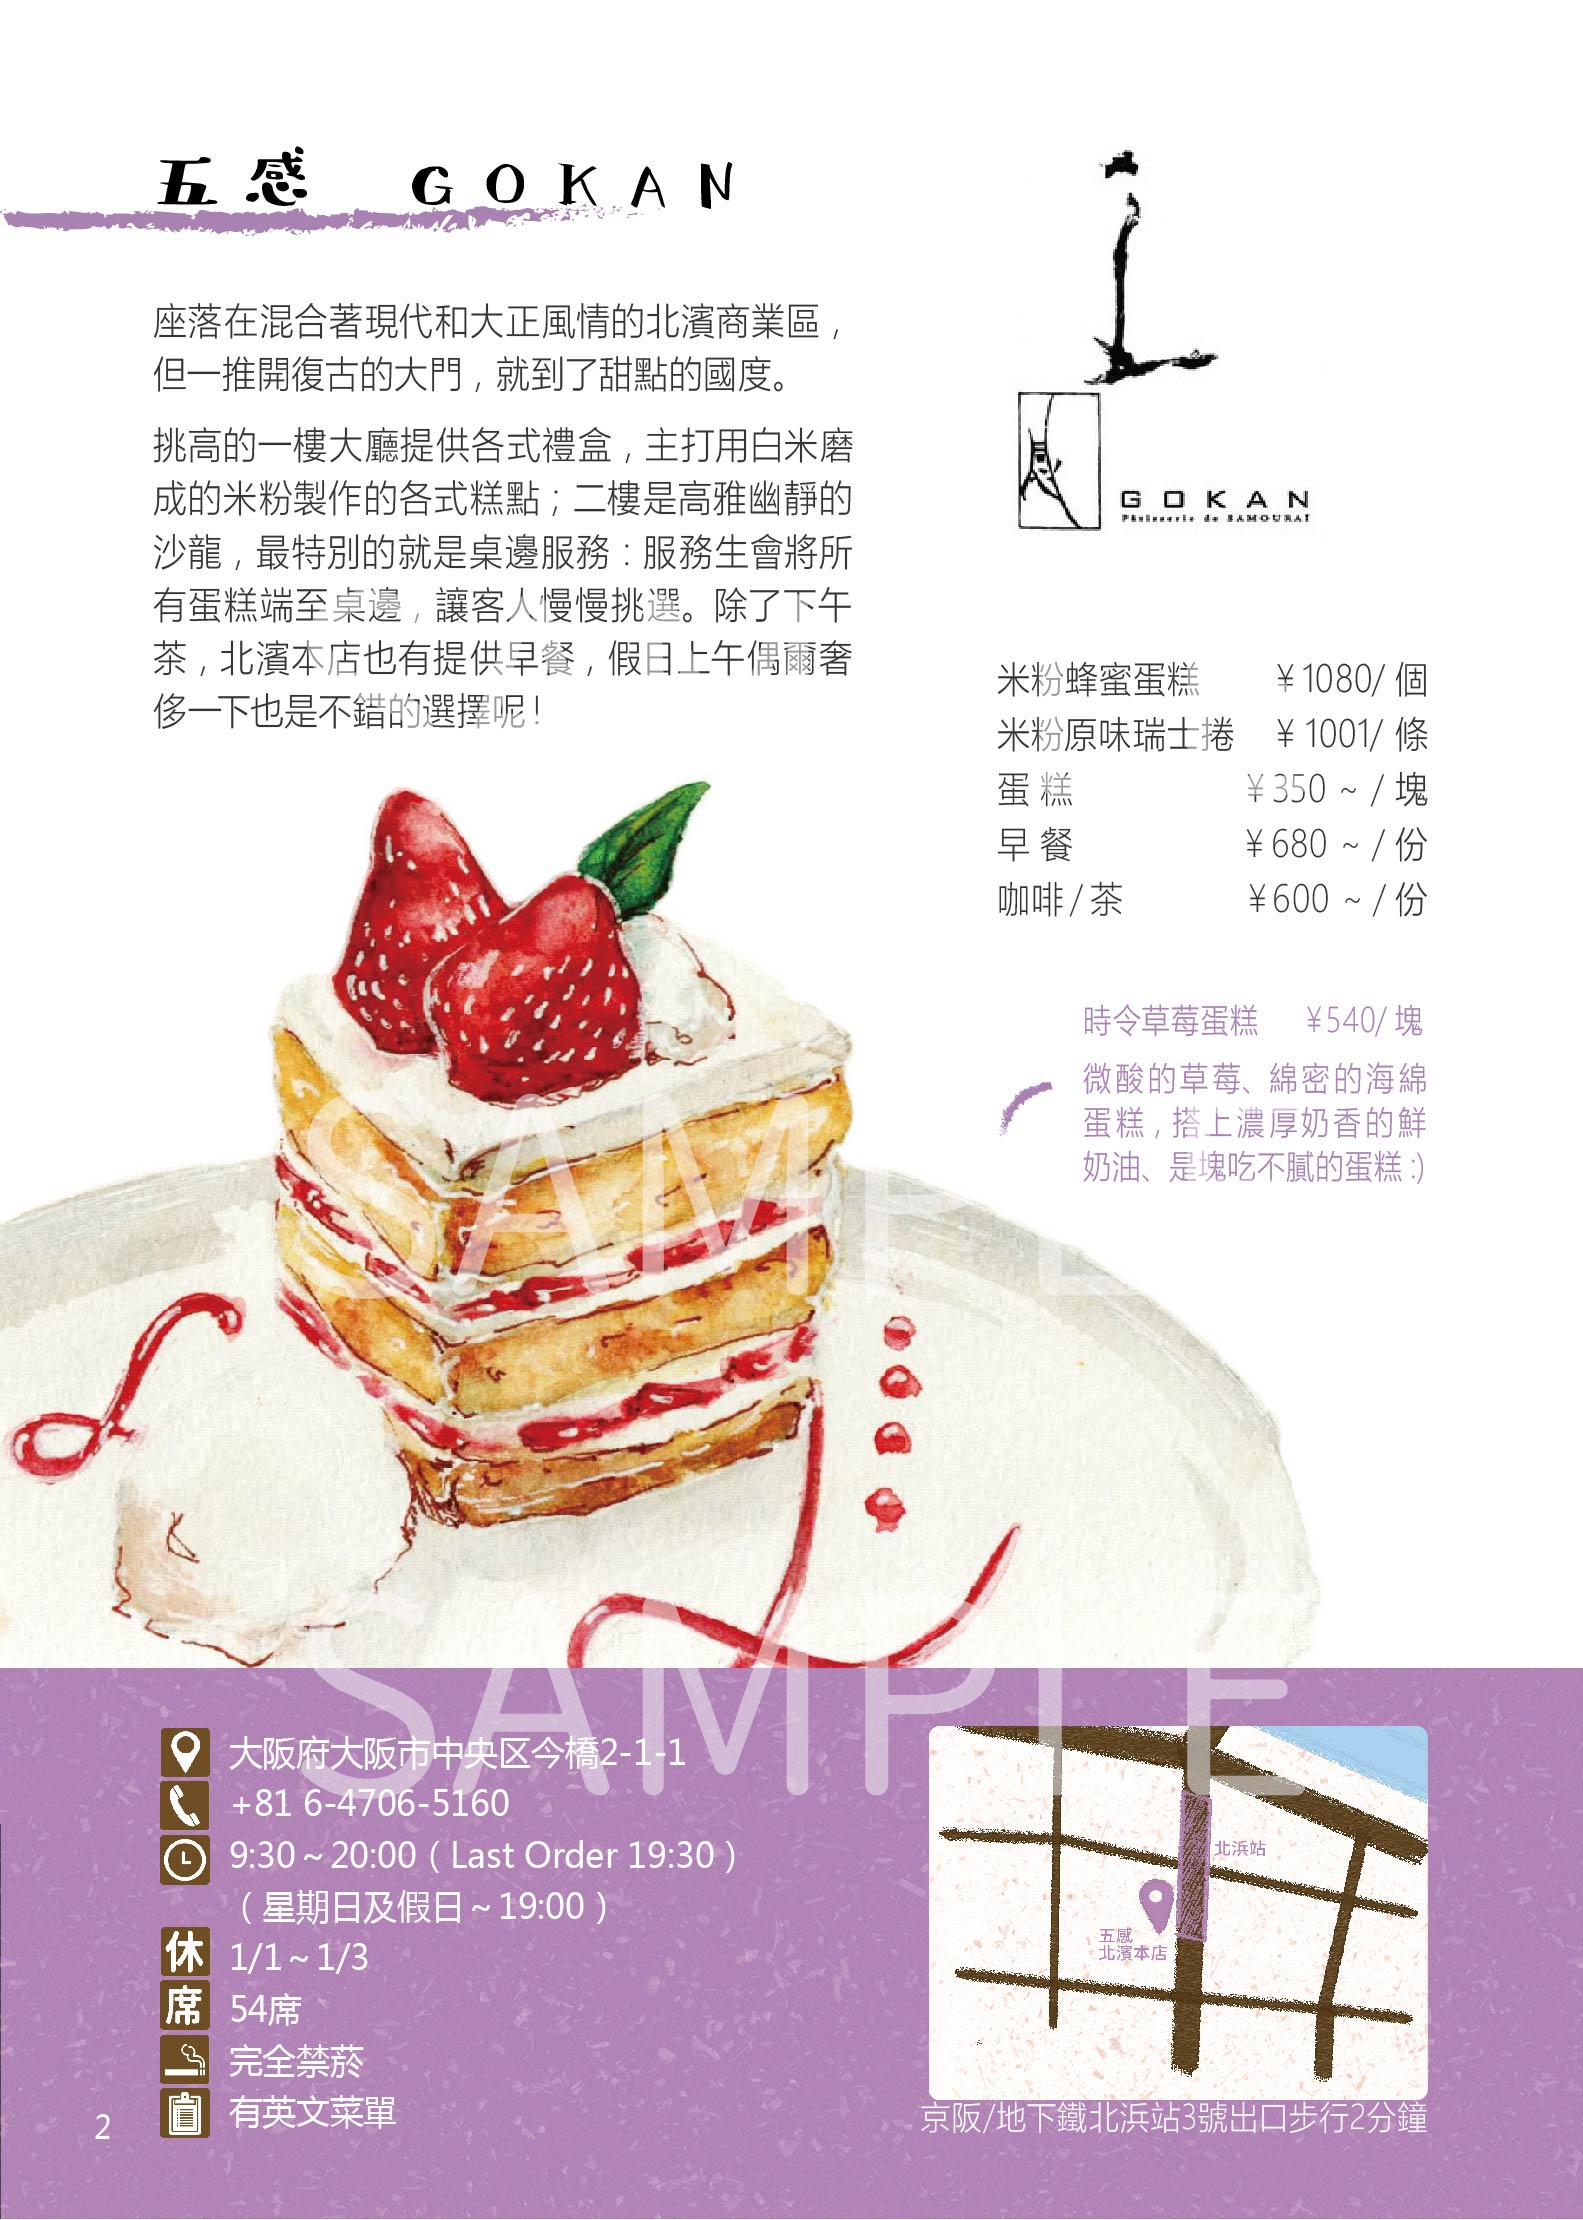 《阪神甜食手札》──日本關西甜點手繪資料集 試閱圖